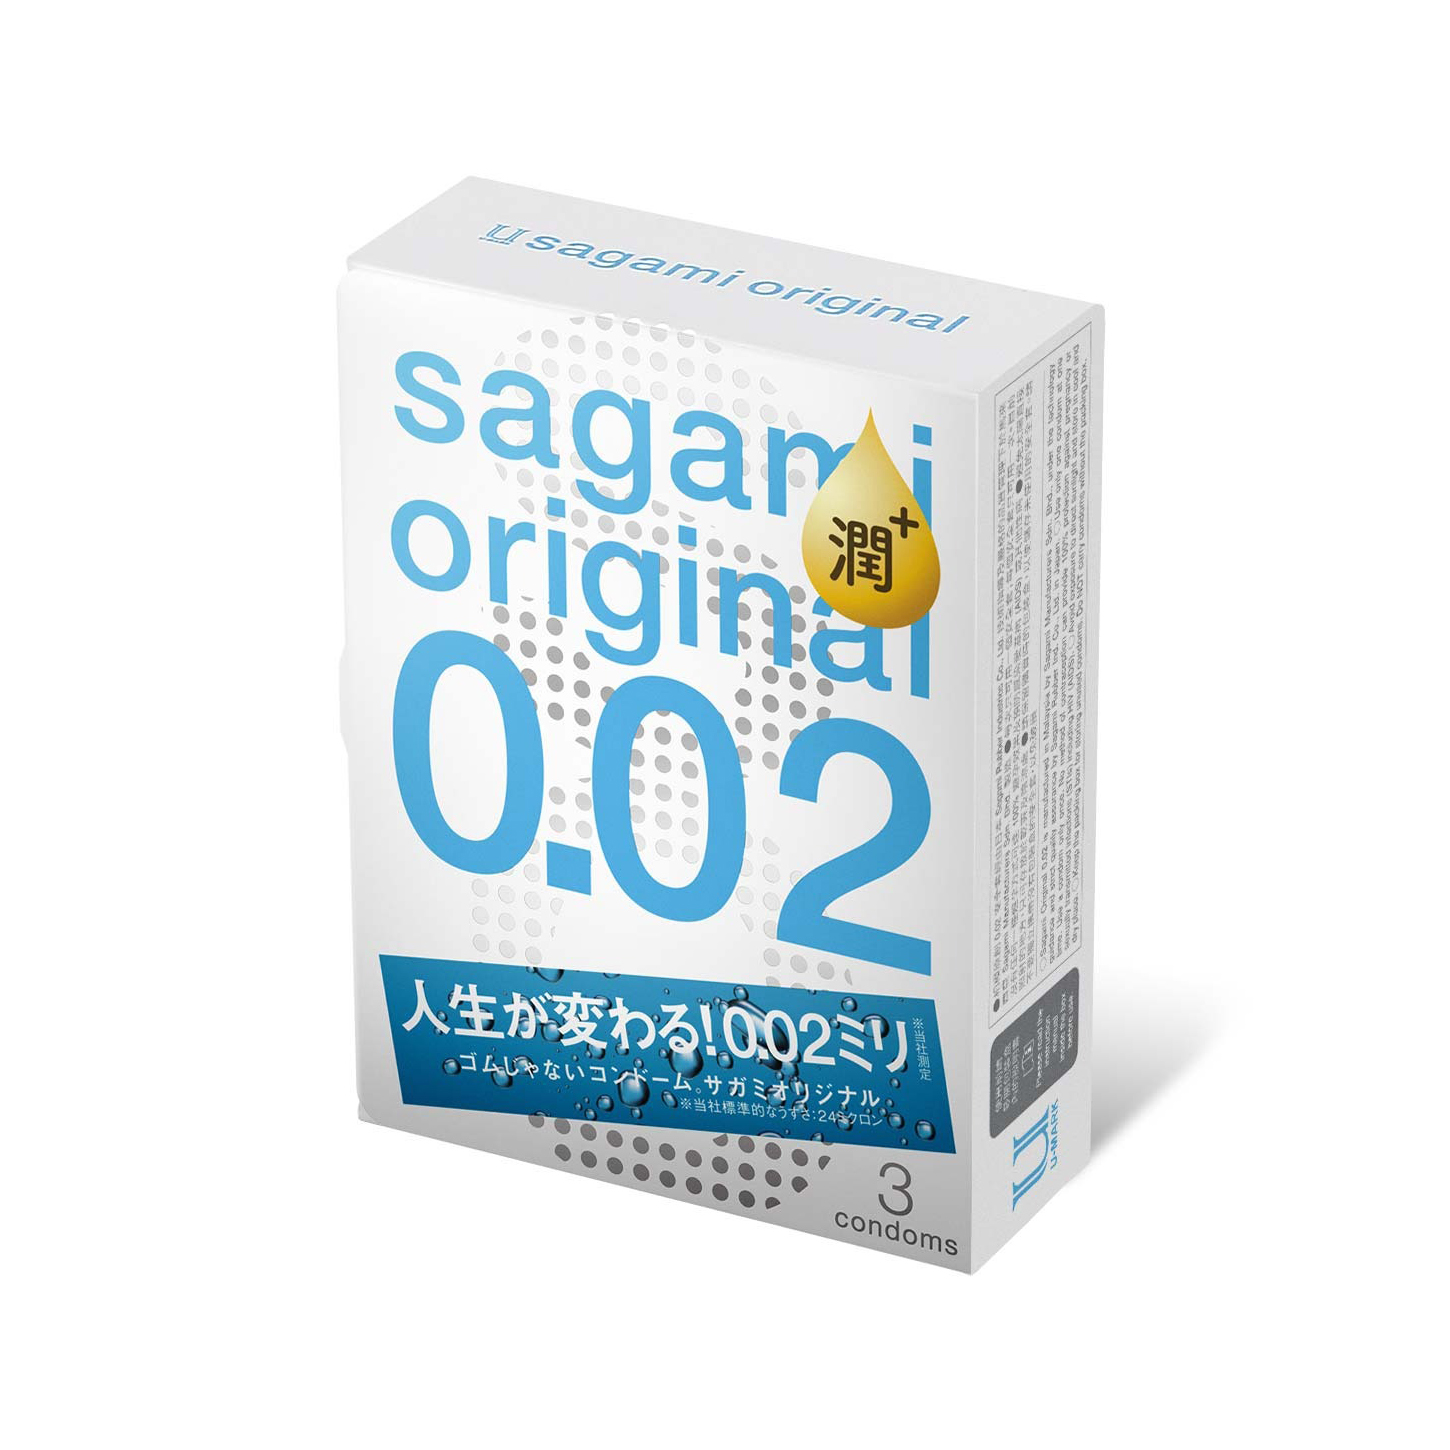 Bcs Sagami Original 0.02mm Extra (3s) - Chất Liệu Poly Urethane - Nhiều Chất Bôi Trơn - Siêu Mỏng - 100% Nhập Khẩu Nhật Bản - Che Tên Sản Phẩm